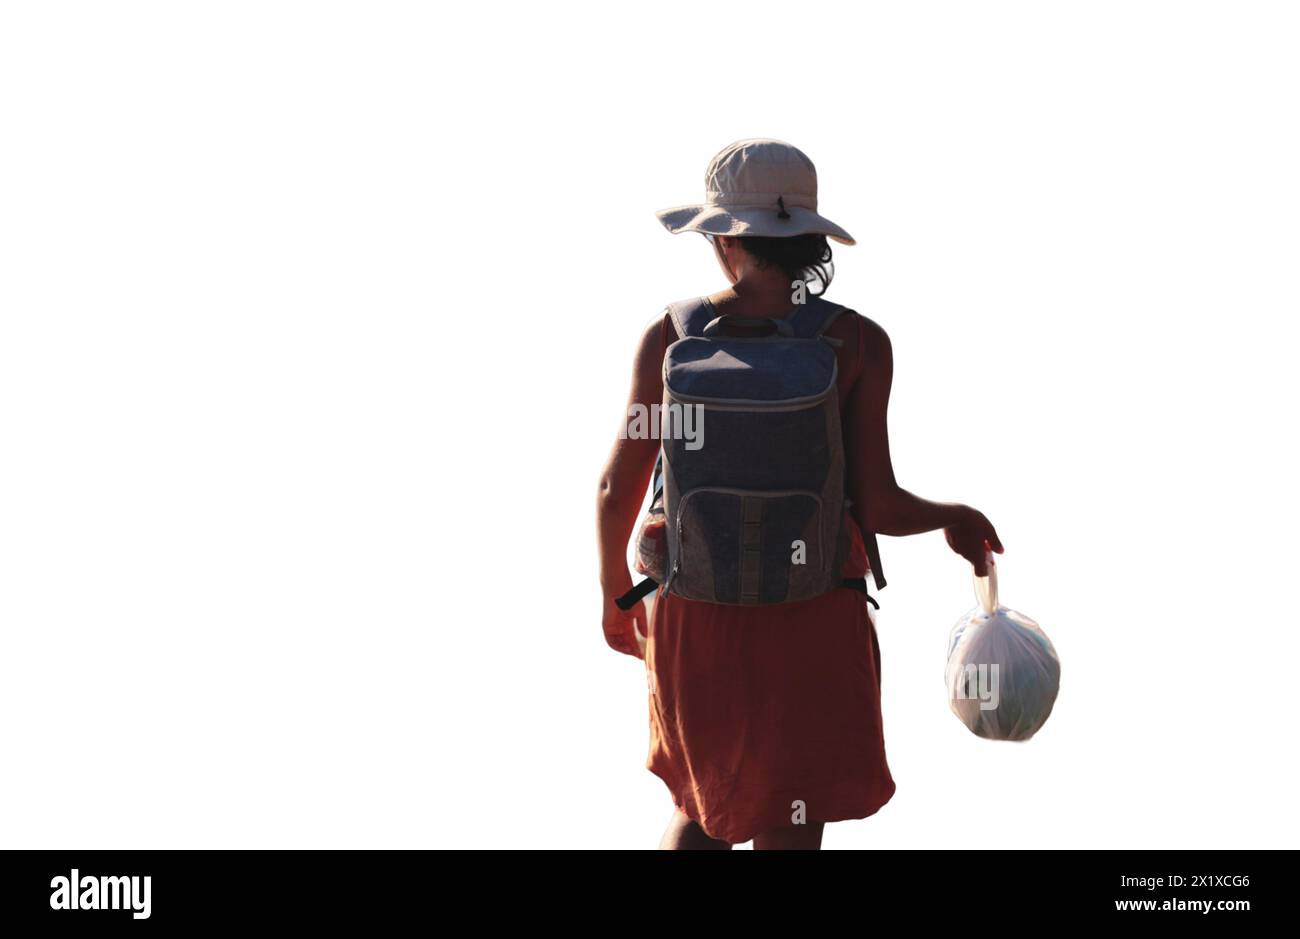 Camper donna che cammina con un sacco per la spazzatura, promuovendo pratiche di campeggio ecocompatibili. Isolato su sfondo trasparente per un uso versatile Foto Stock